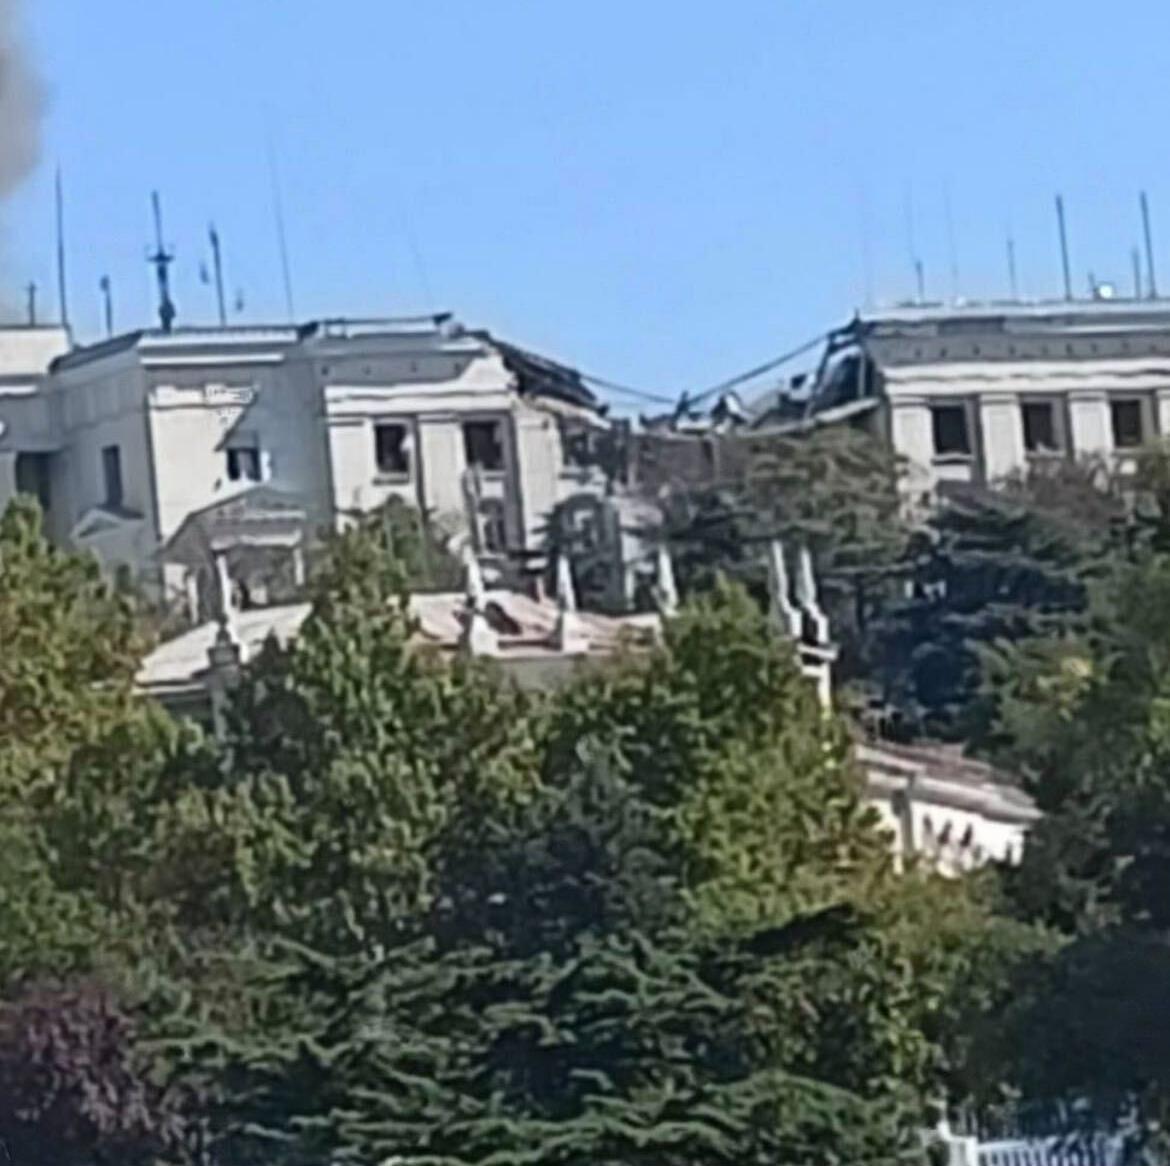 Svartahavsflottans högkvarter på Krimhalvön efter attacken.